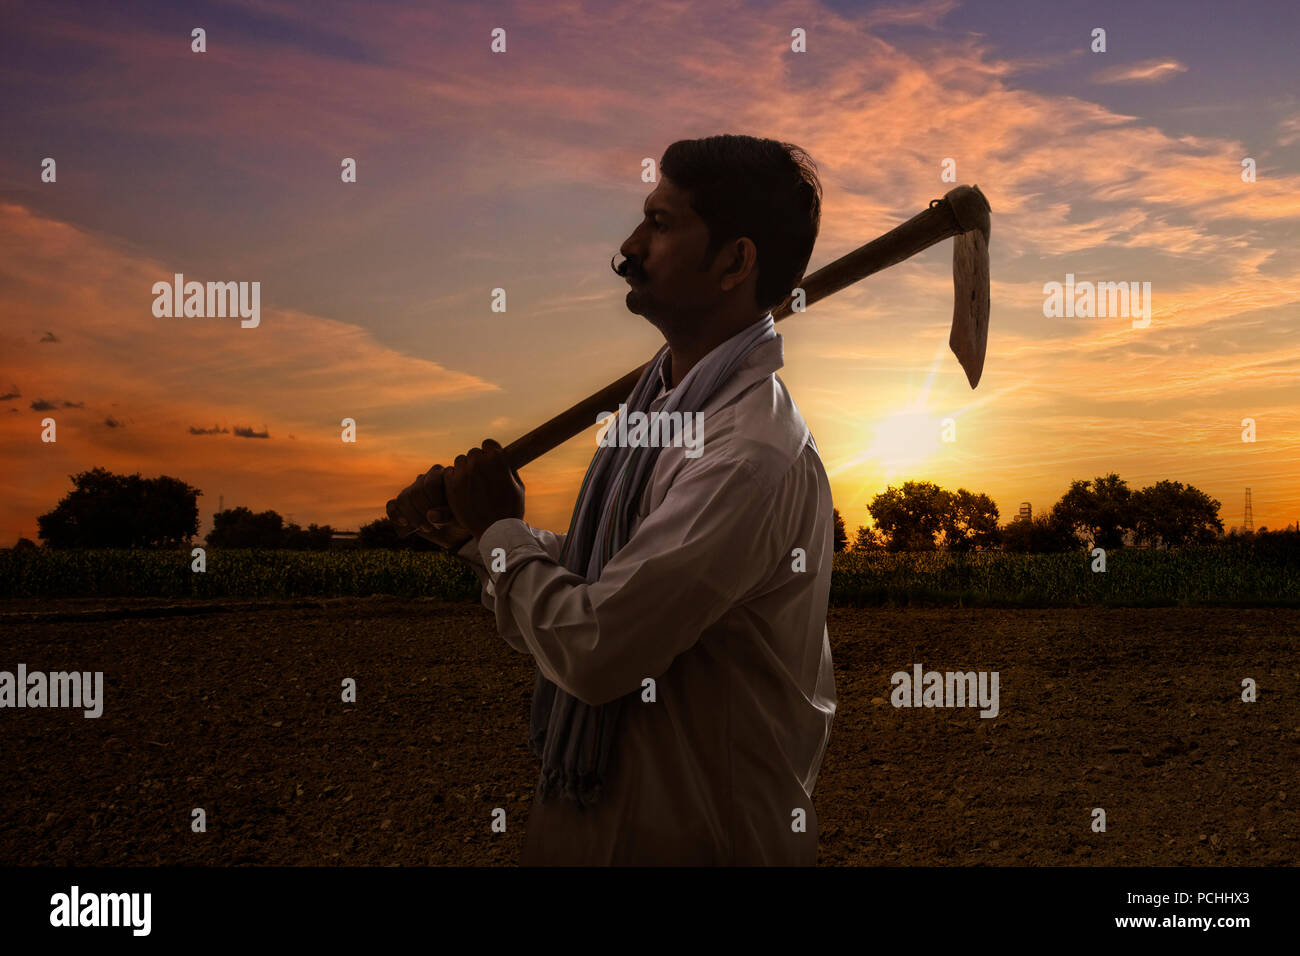 L'agriculteur indien hoe sur son épaule standing in field au lever du soleil Banque D'Images